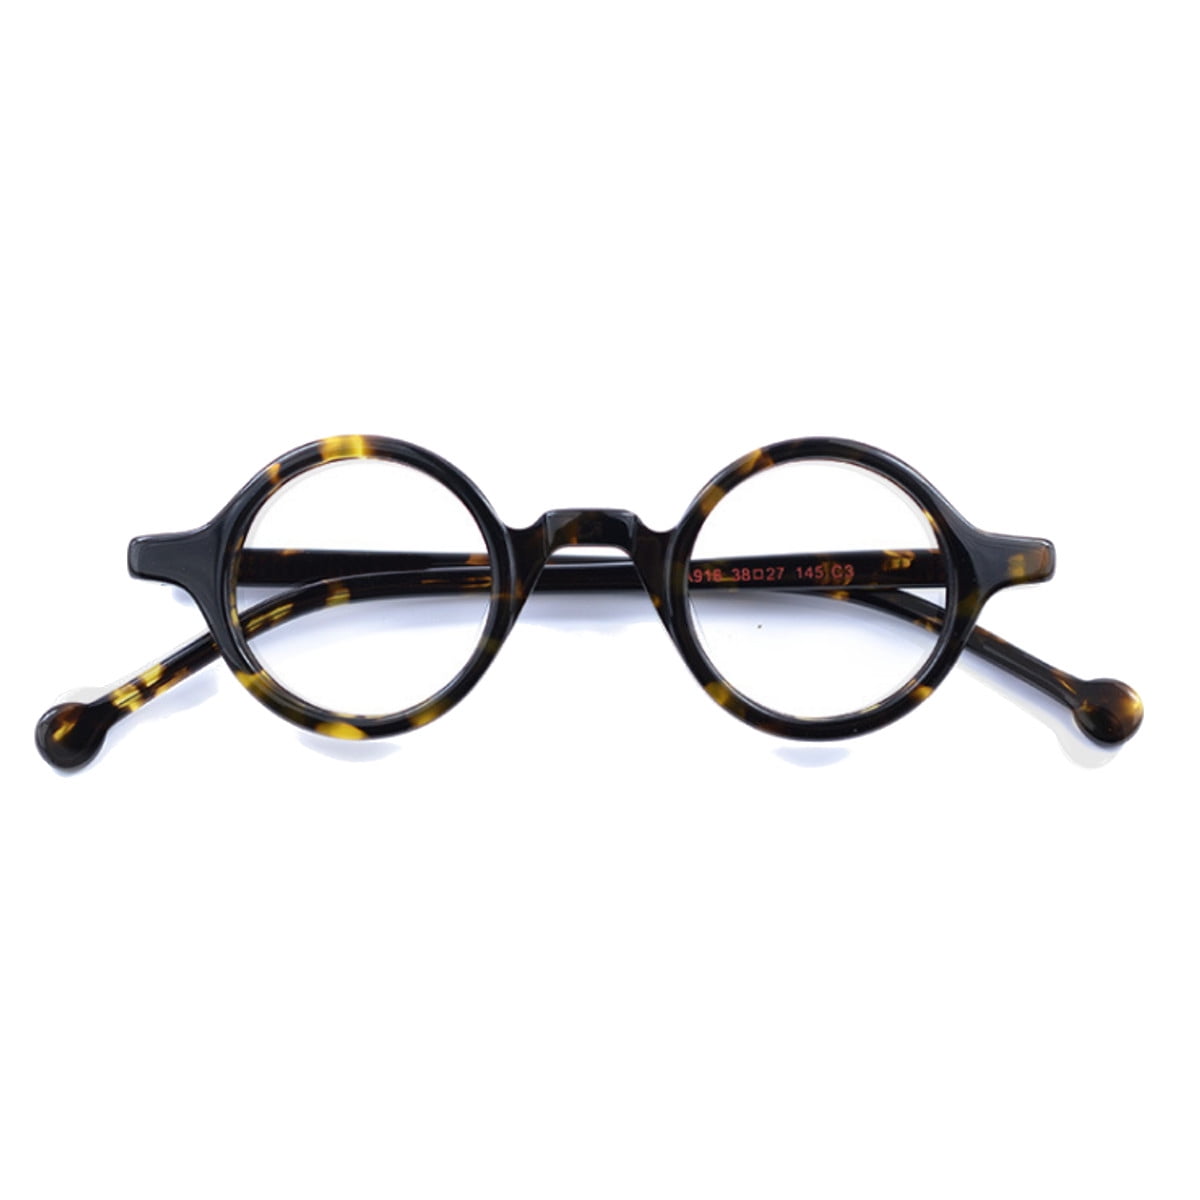 Unisex Acetate Imitation Wood Eyeglasses Frame Round Retro Clear Lens Glasses